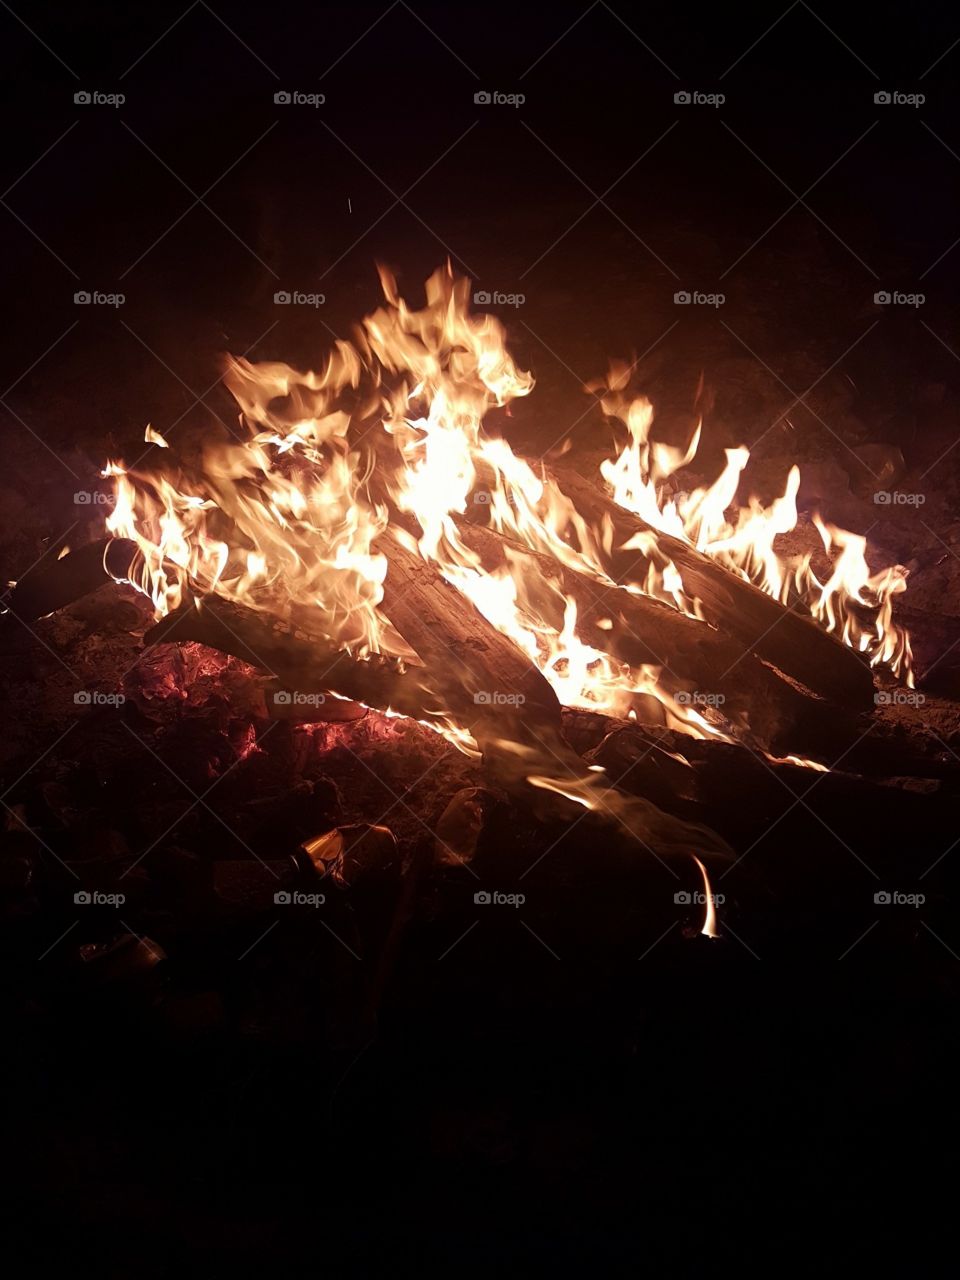 Campfire blaze